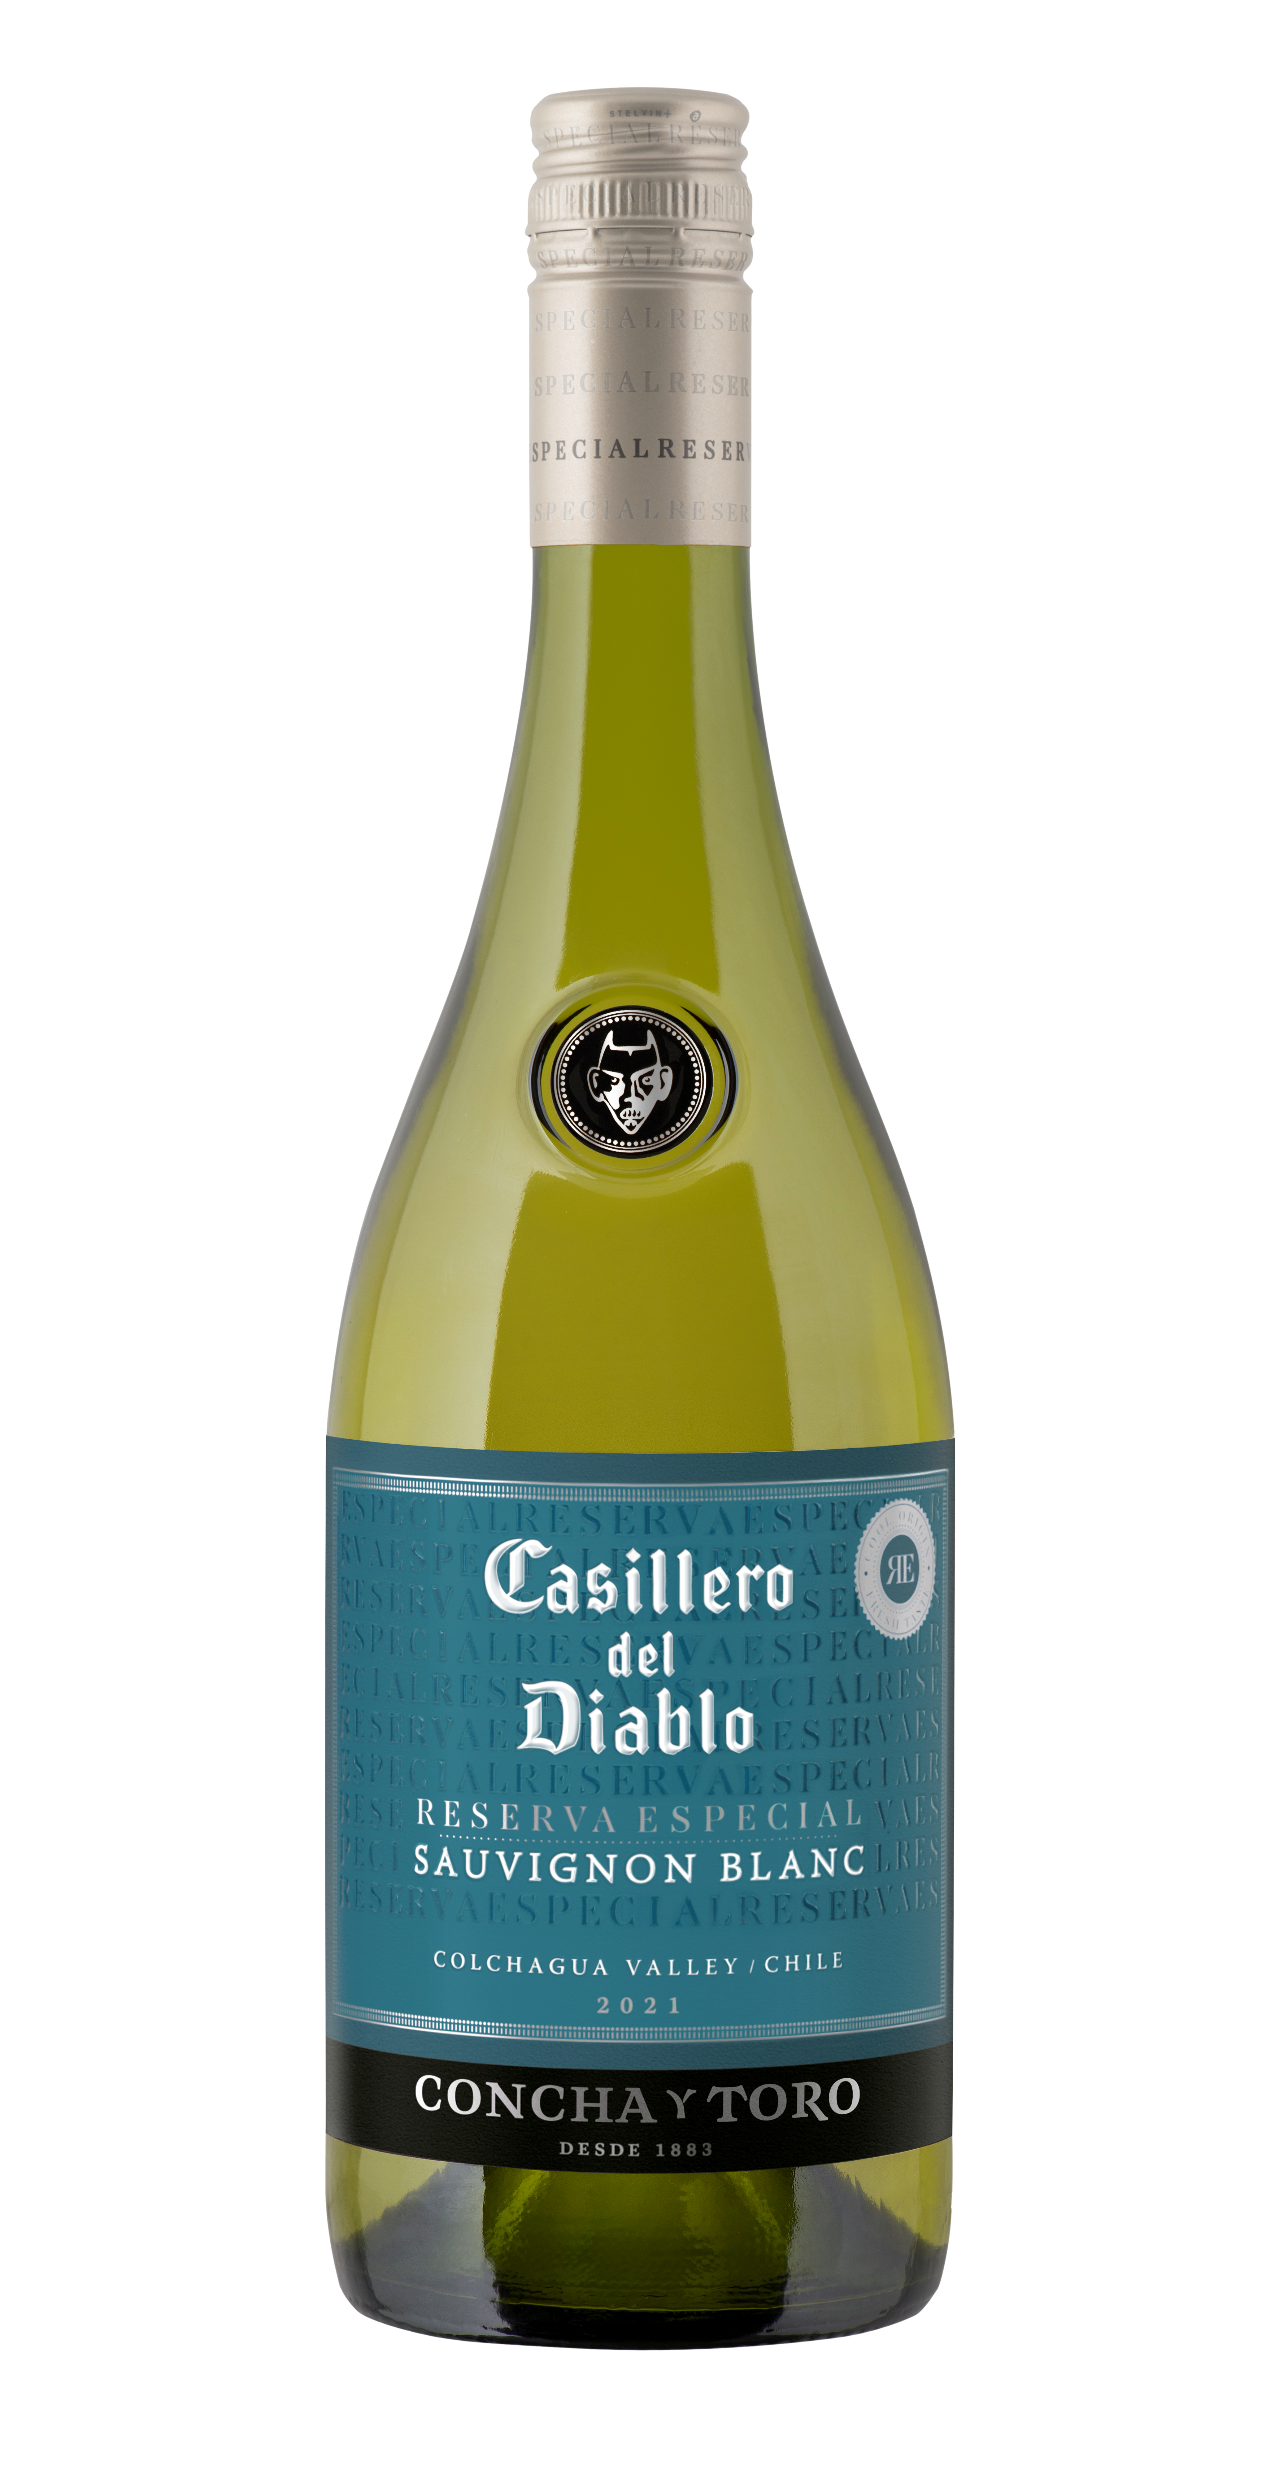 Casillero del Diablo launches premium Reserva Especial Sauvignon Blanc